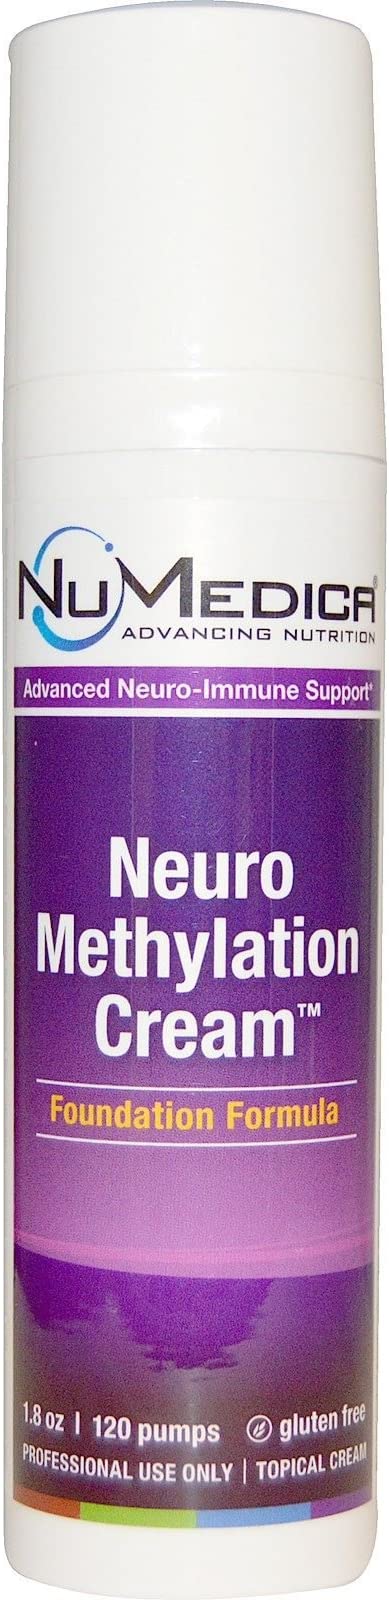 NuMedica Neuromethylation Cream, 1.8 Ounce